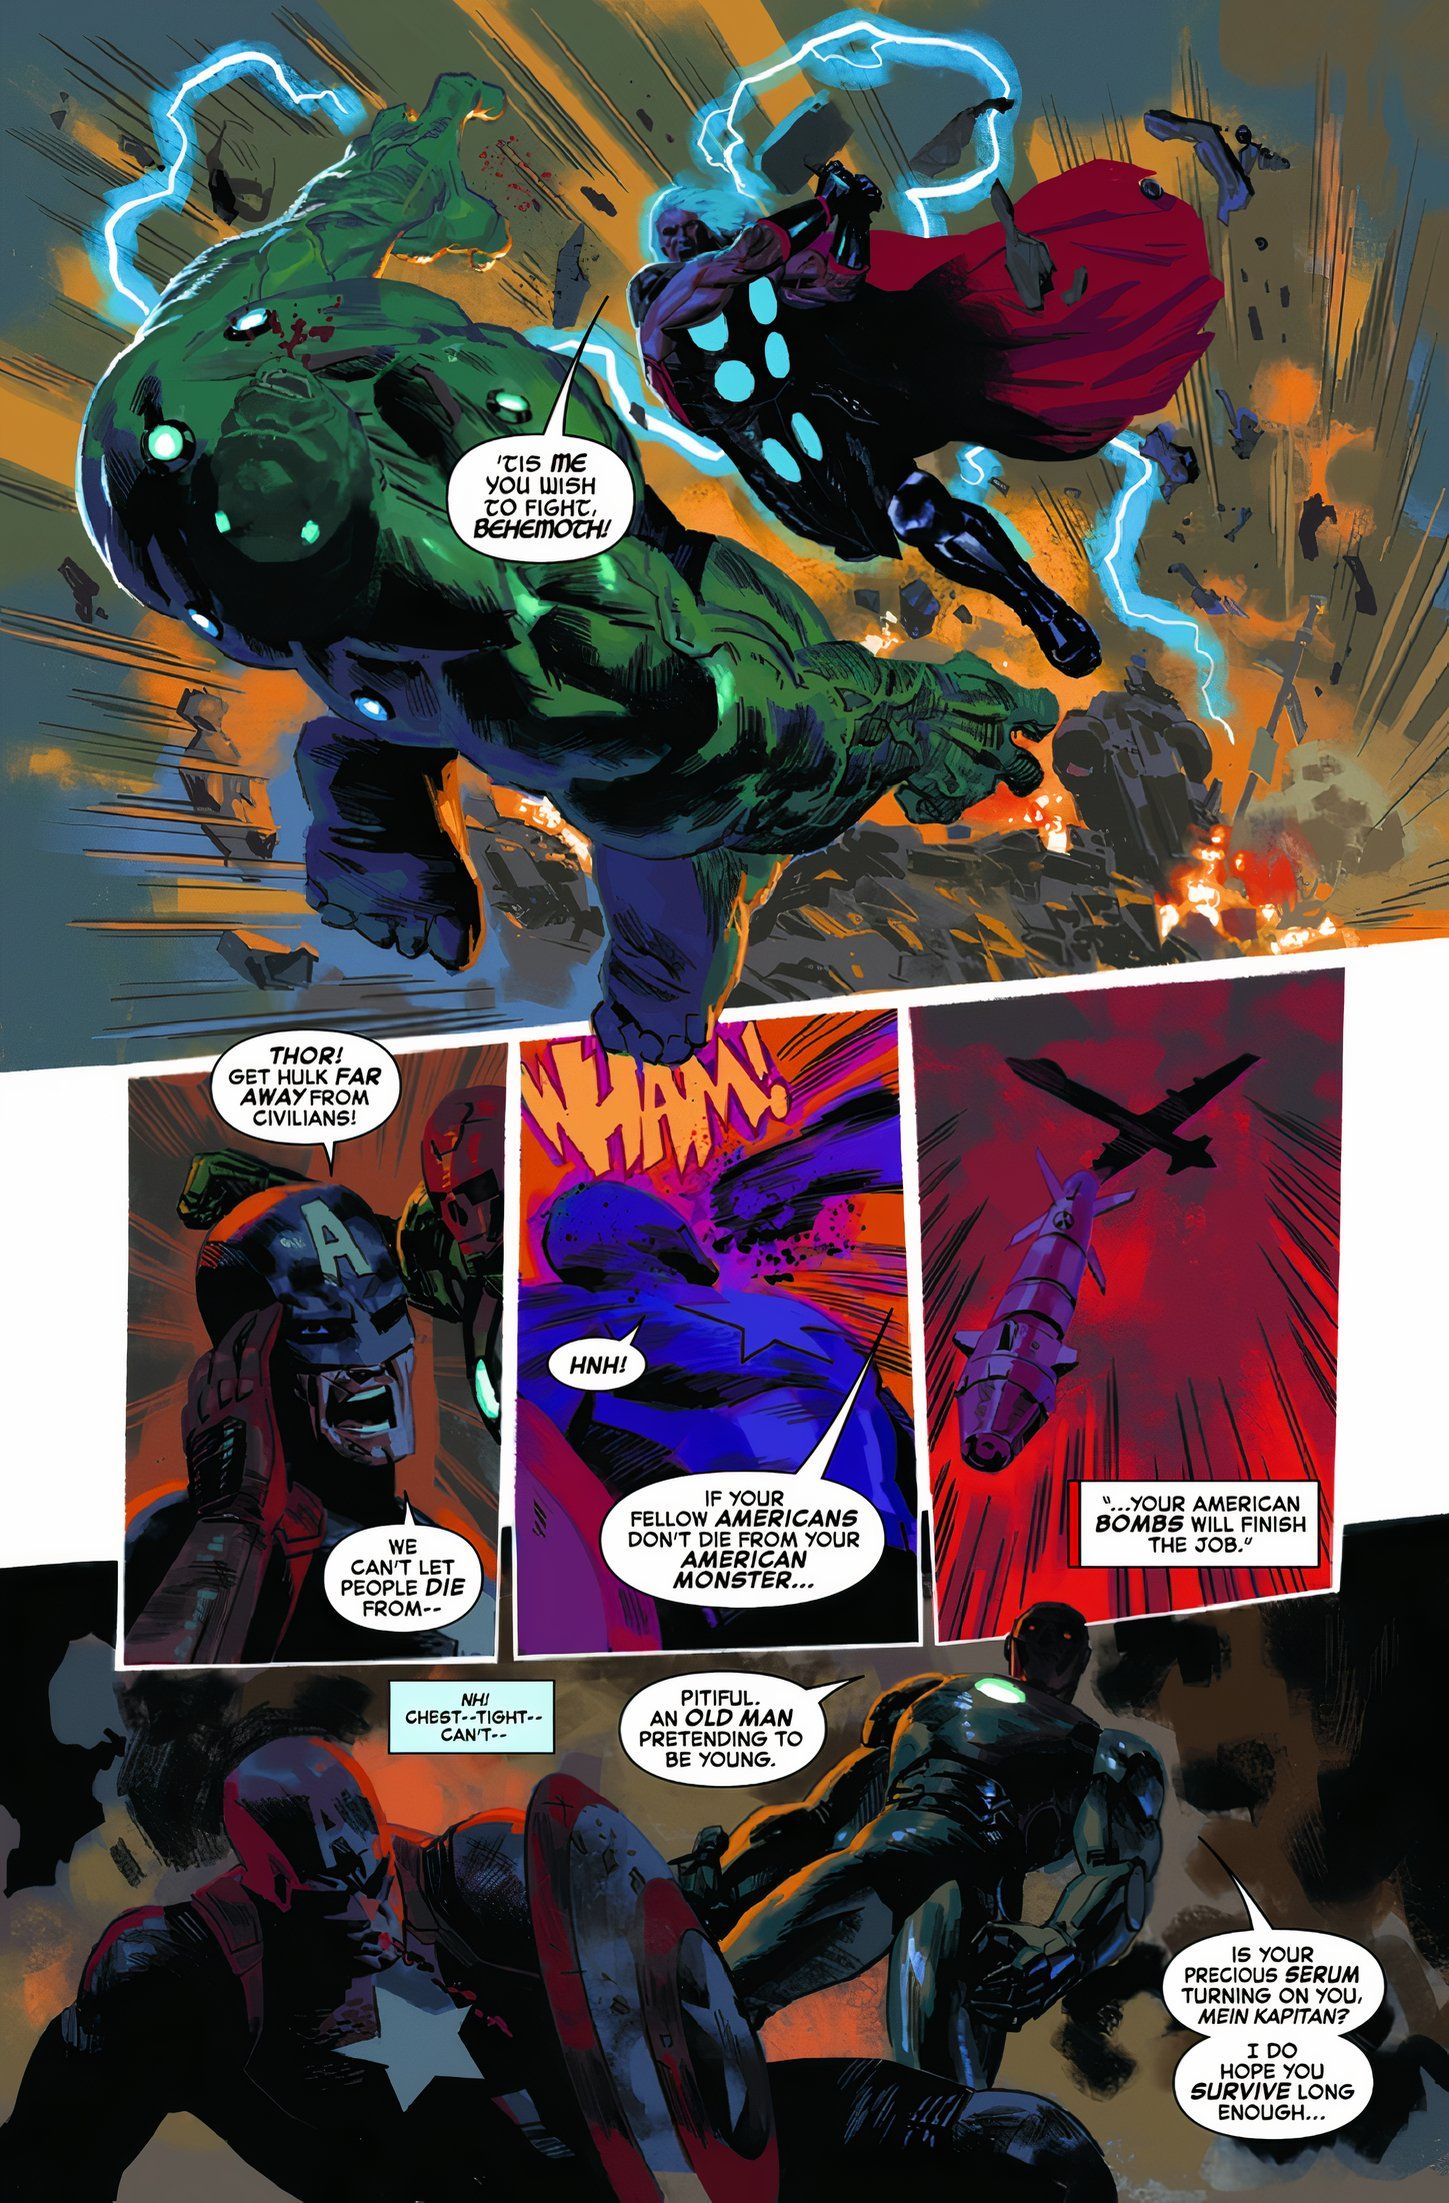 Thor e Hulk lutam enquanto Red Skull começa a insultar o Capitão América enquanto ele está no chão. 